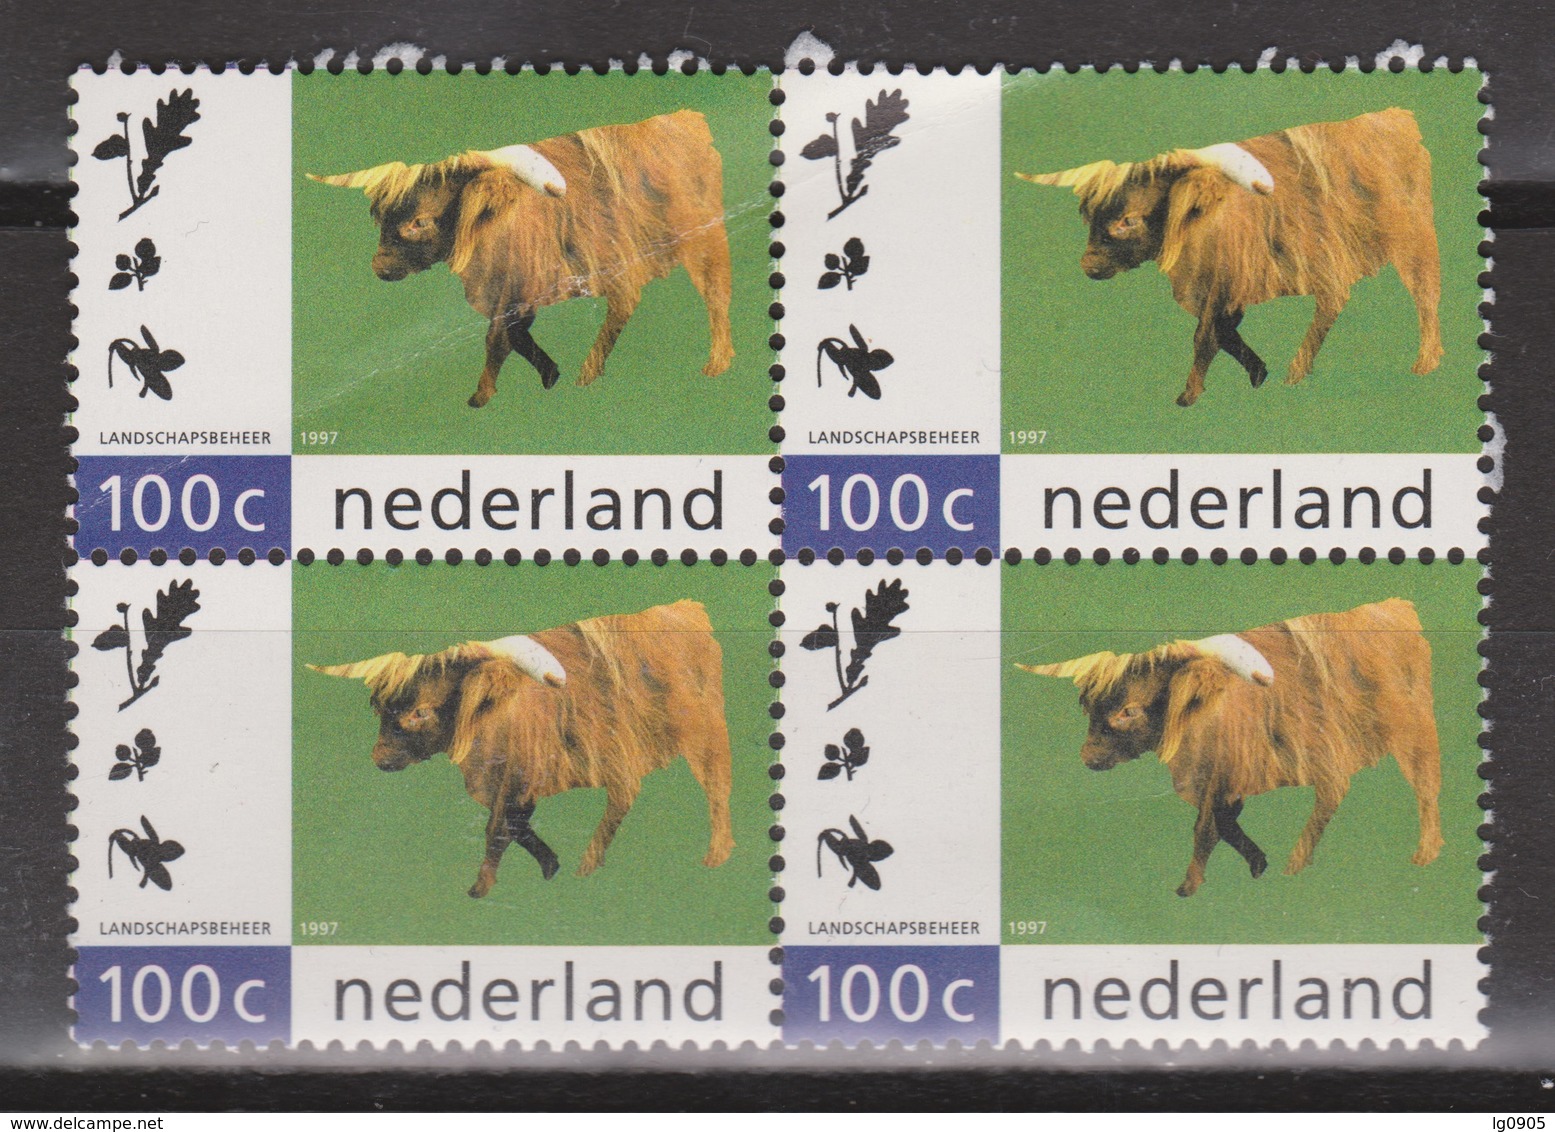 Netherlands Nederland Niederlande Pays Bas 1712 MNH Sheet ; Rund, Cow, Vache, Vacha Schotse Hooglander - Cows